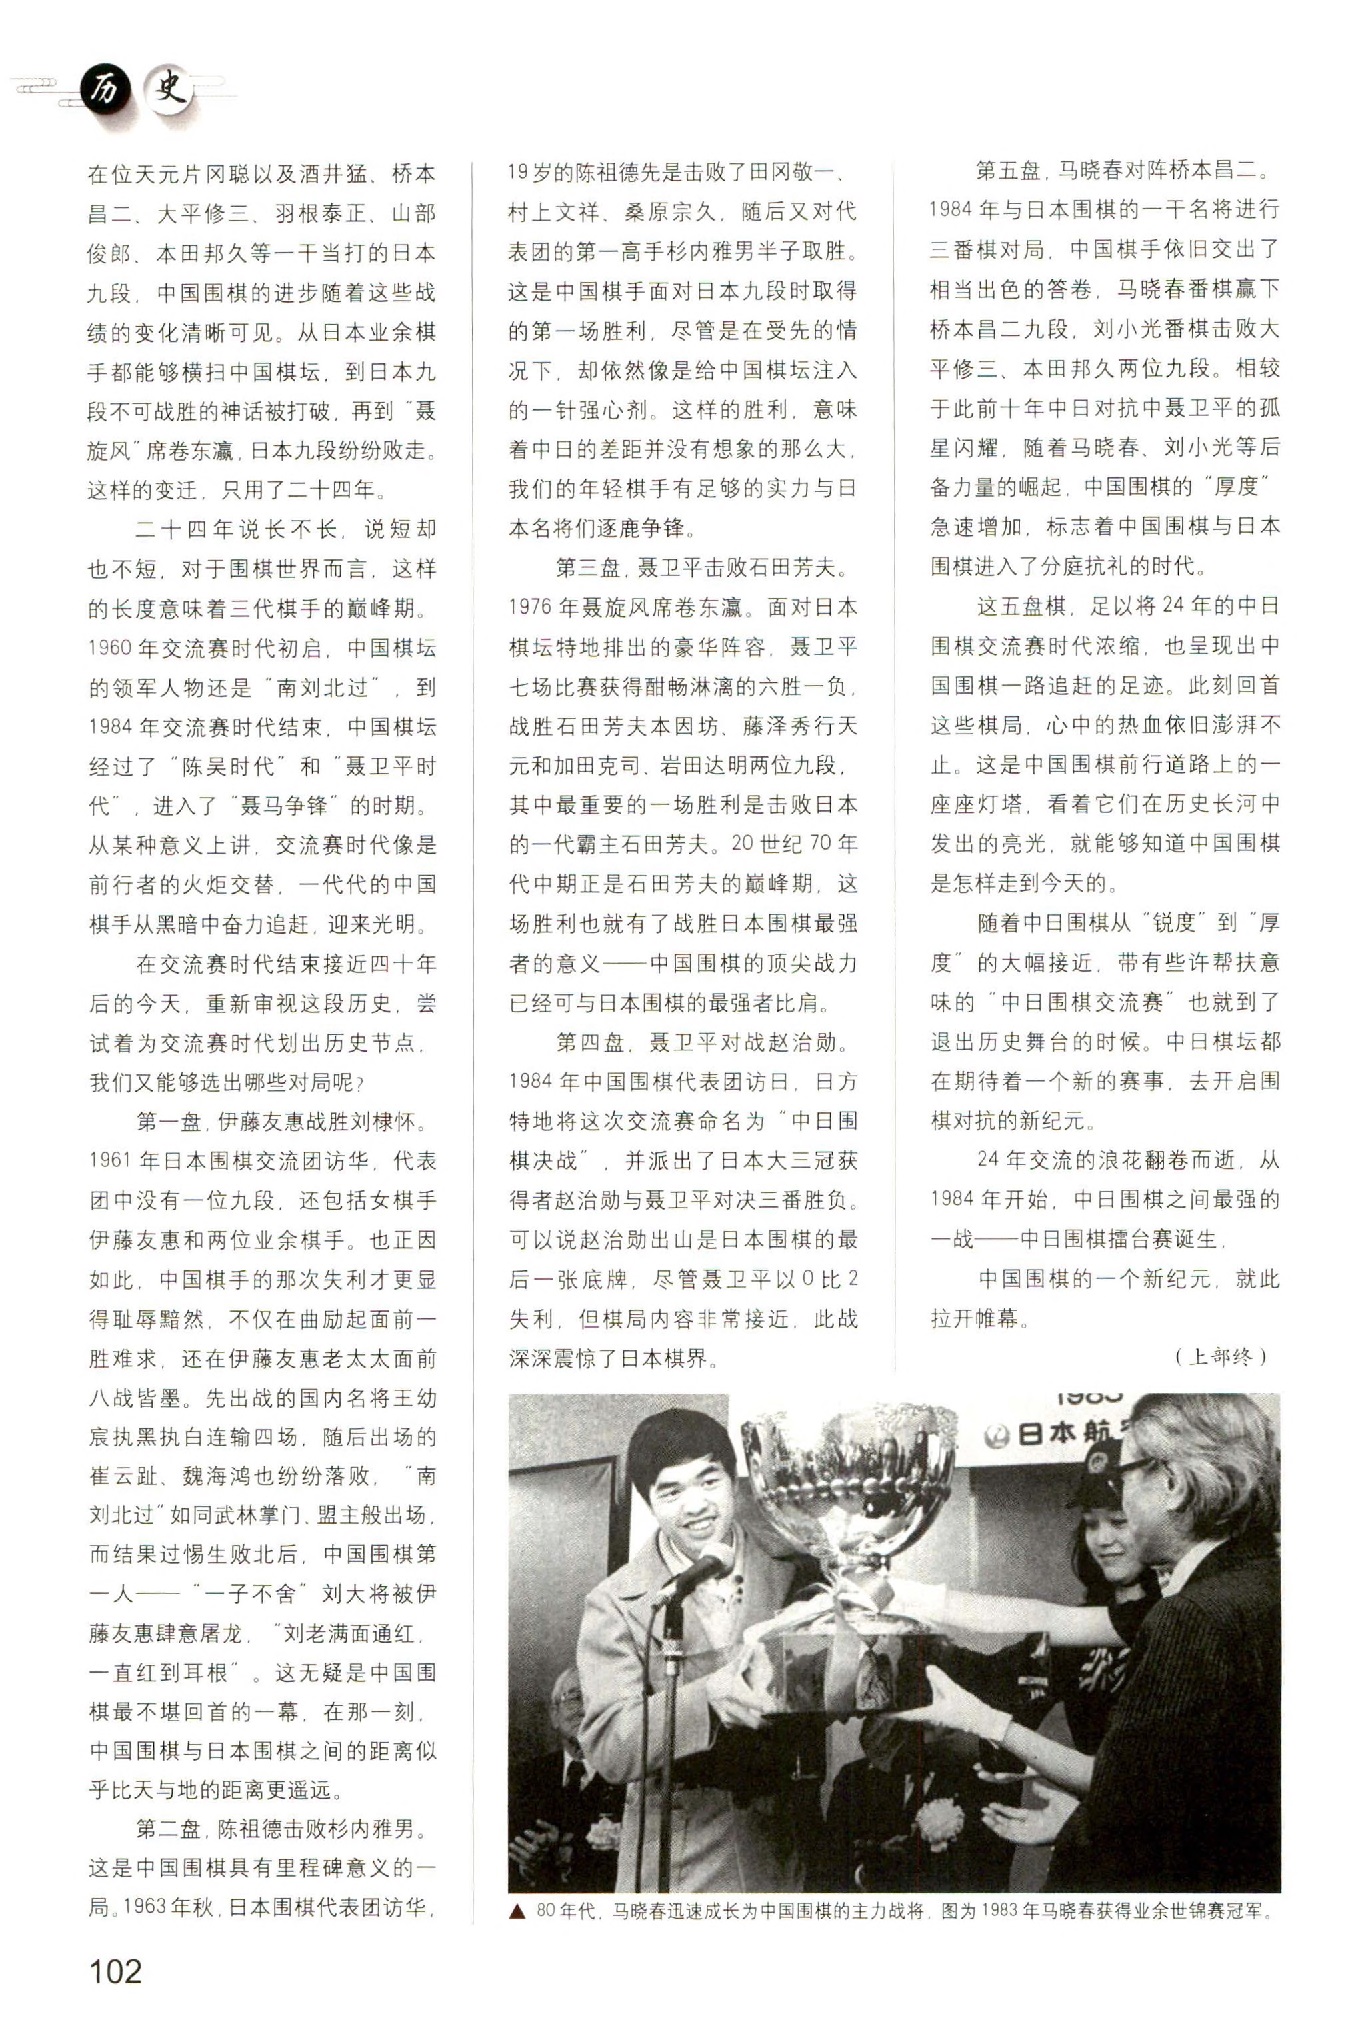 页面提取自－ 黑白两千年 中国围棋史话(十一)_页面_2.jpg